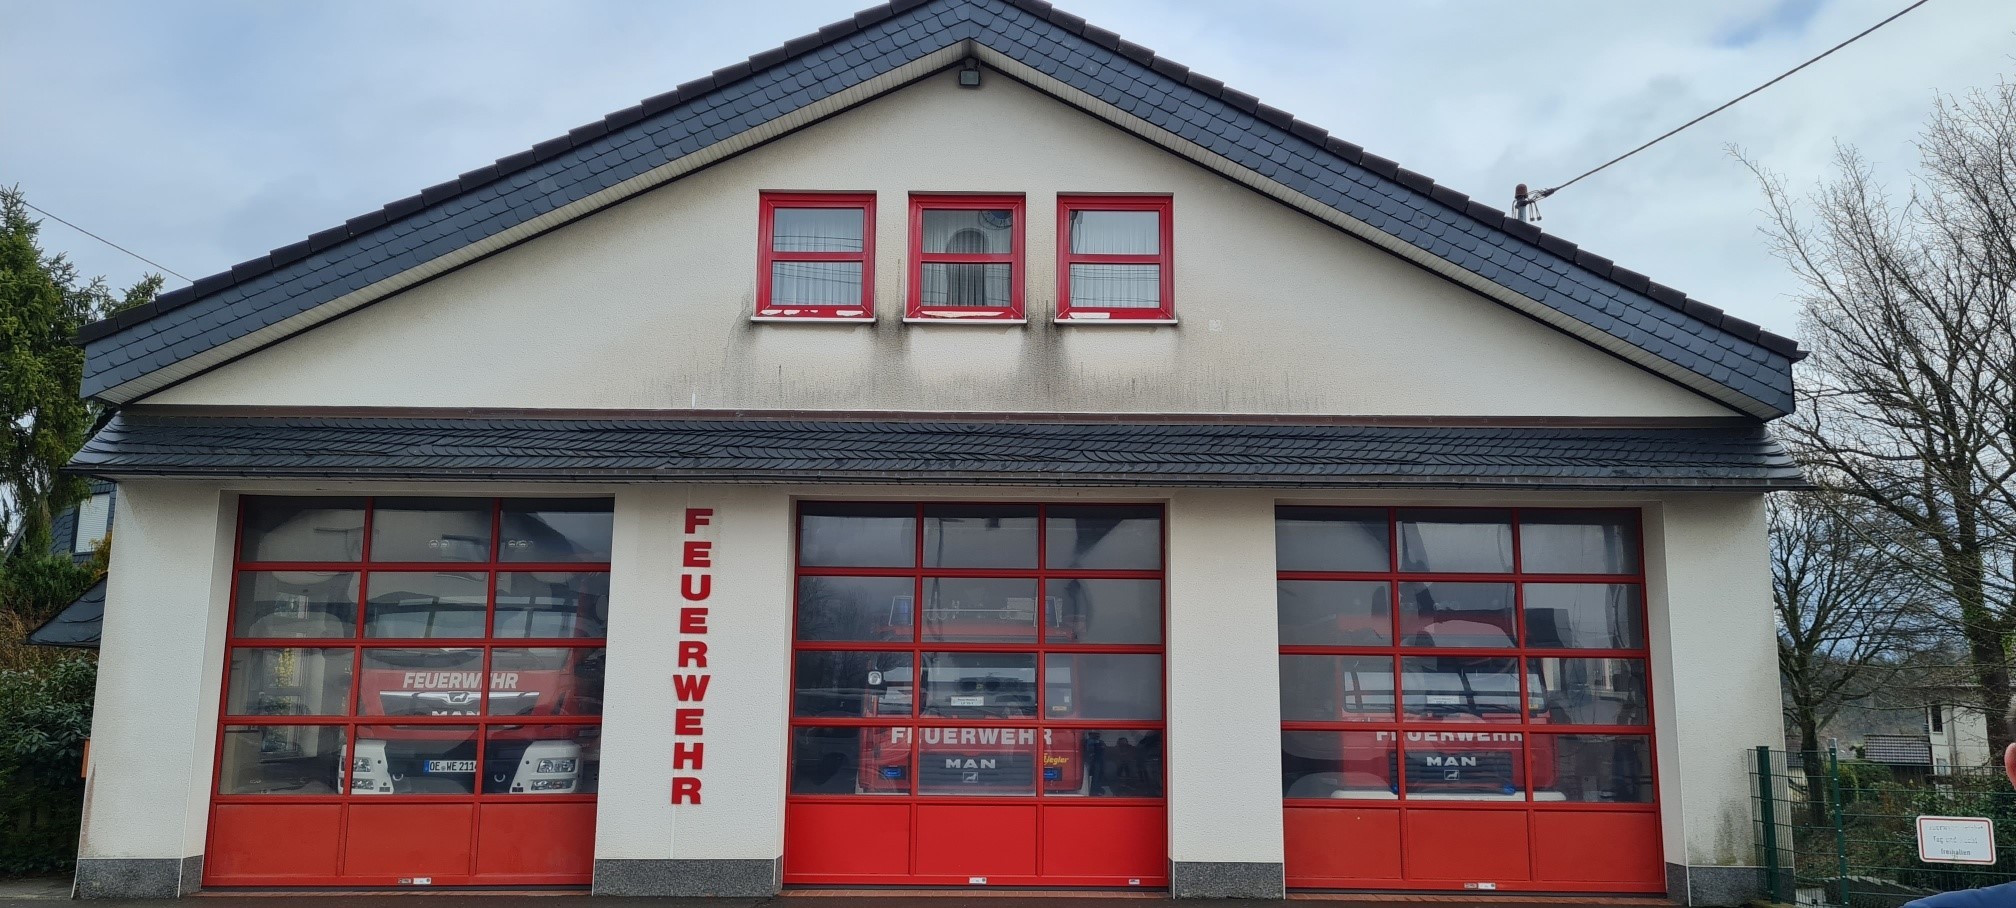 Das Feuerwehrgerätehaus in Hünsborn soll an einem anderen Standort neugebaut werden. von SPD Wenden